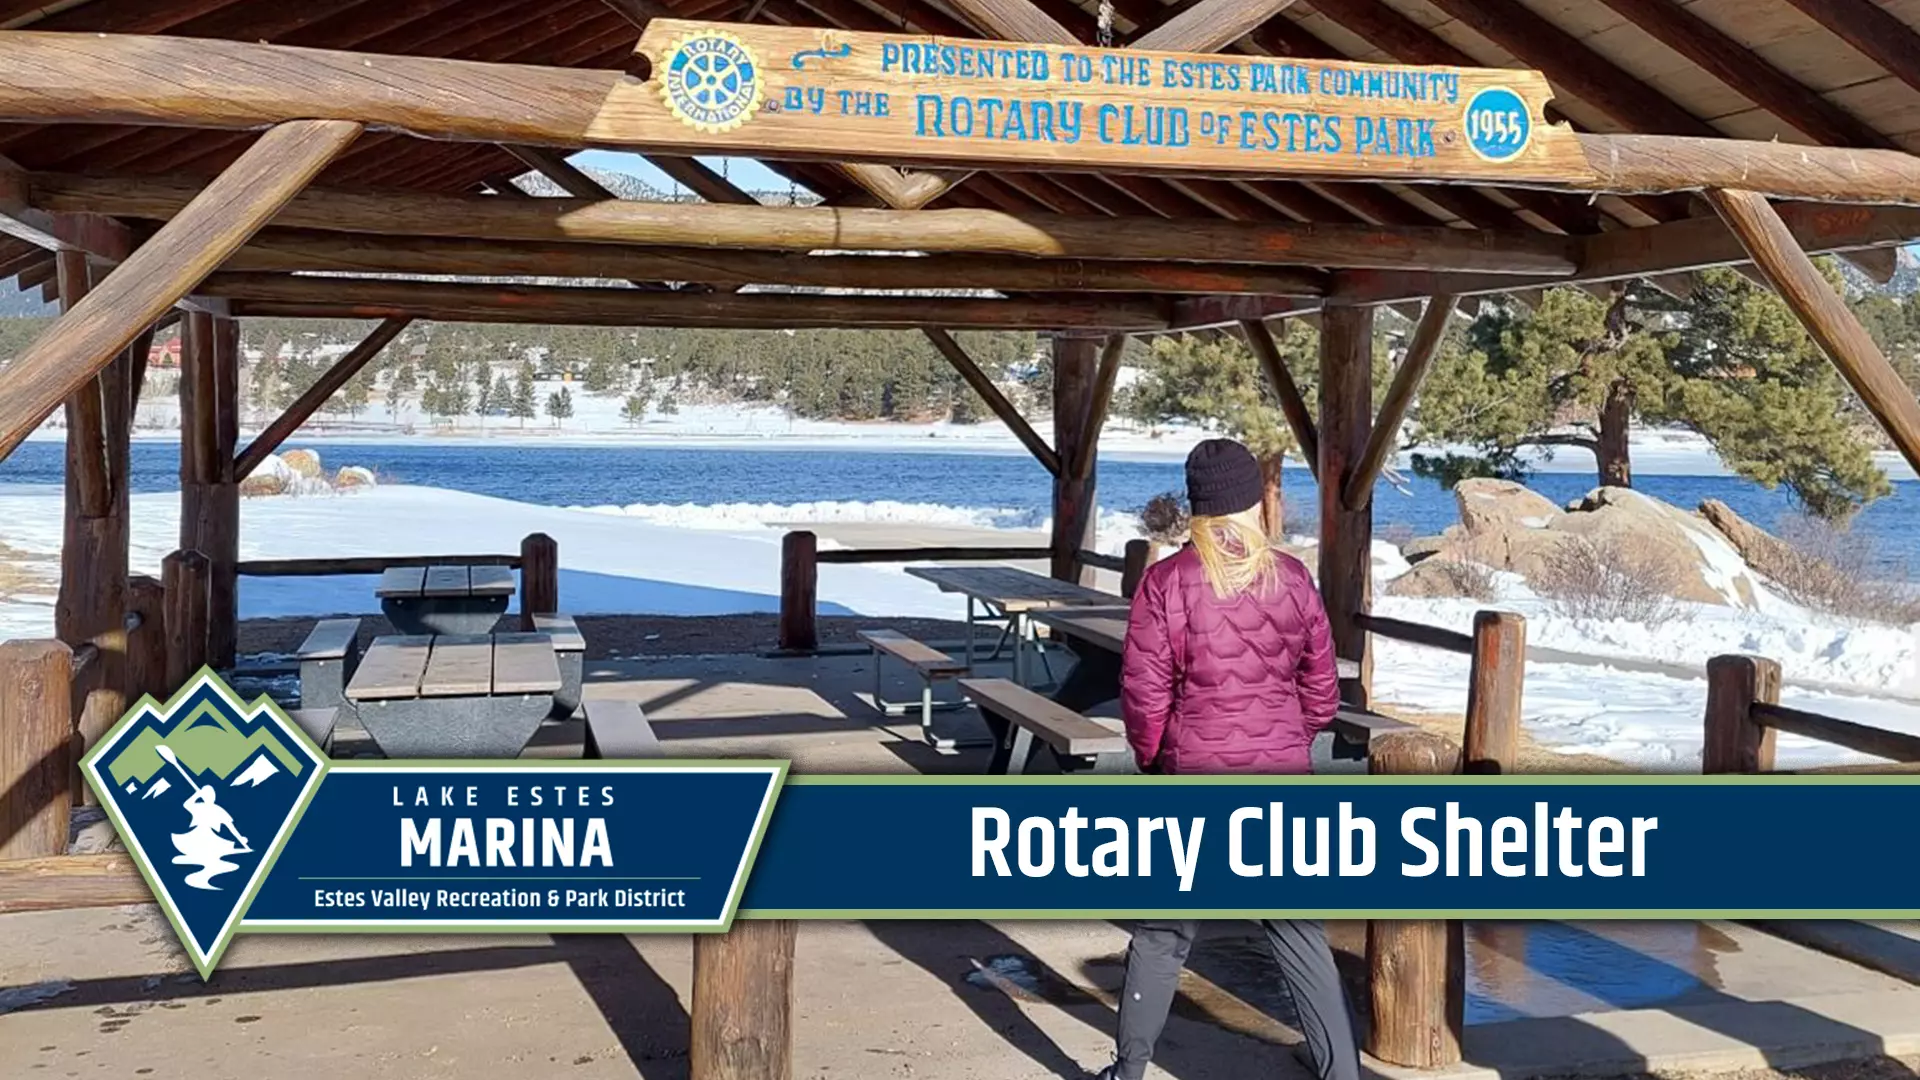 Rotary Club Shelter at Lake Estes